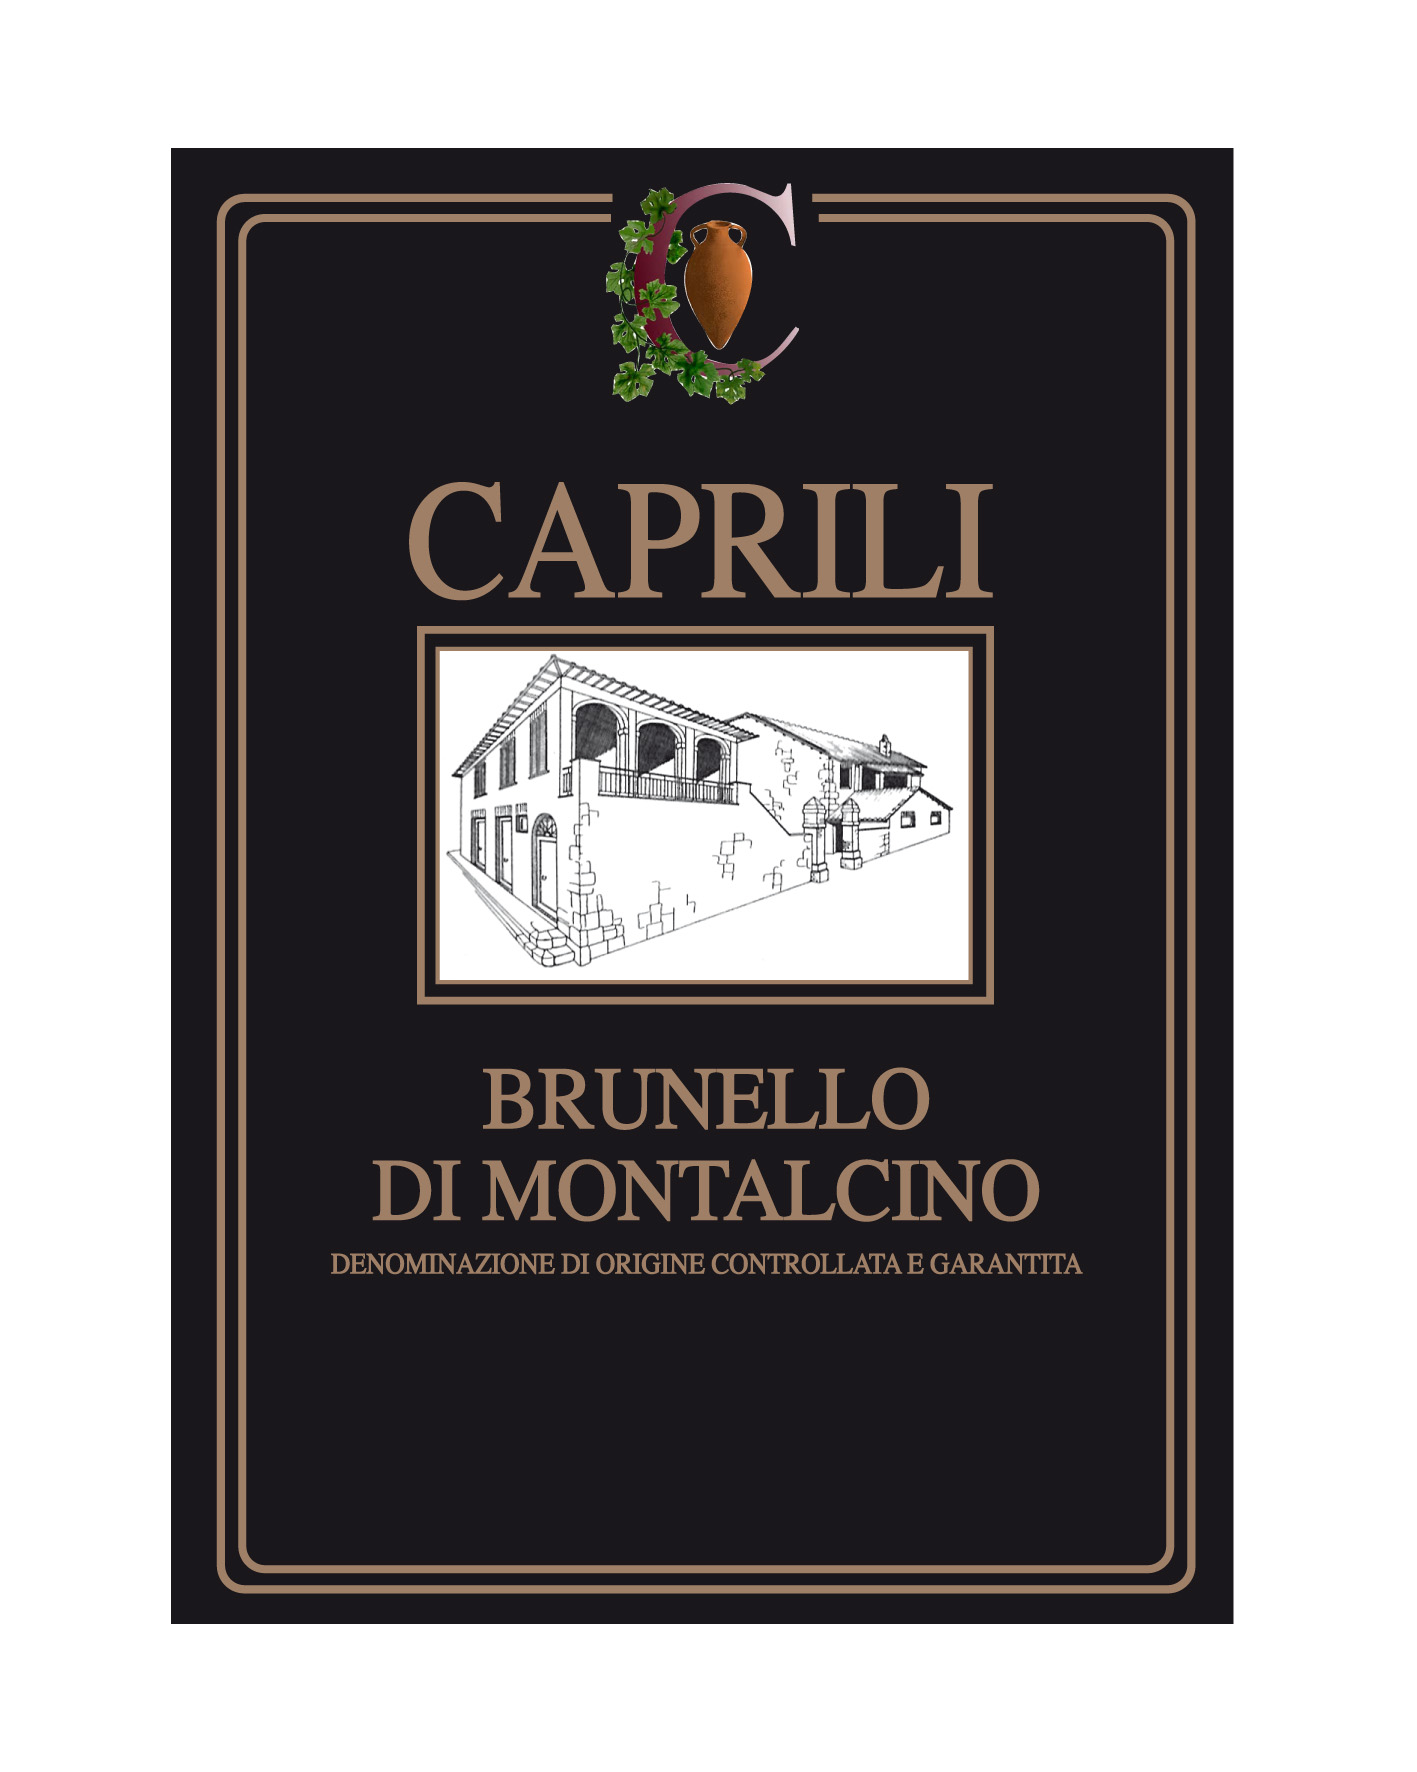 Caprili - Brunello di Montalcino 2017 - All Star Wine & Spirits